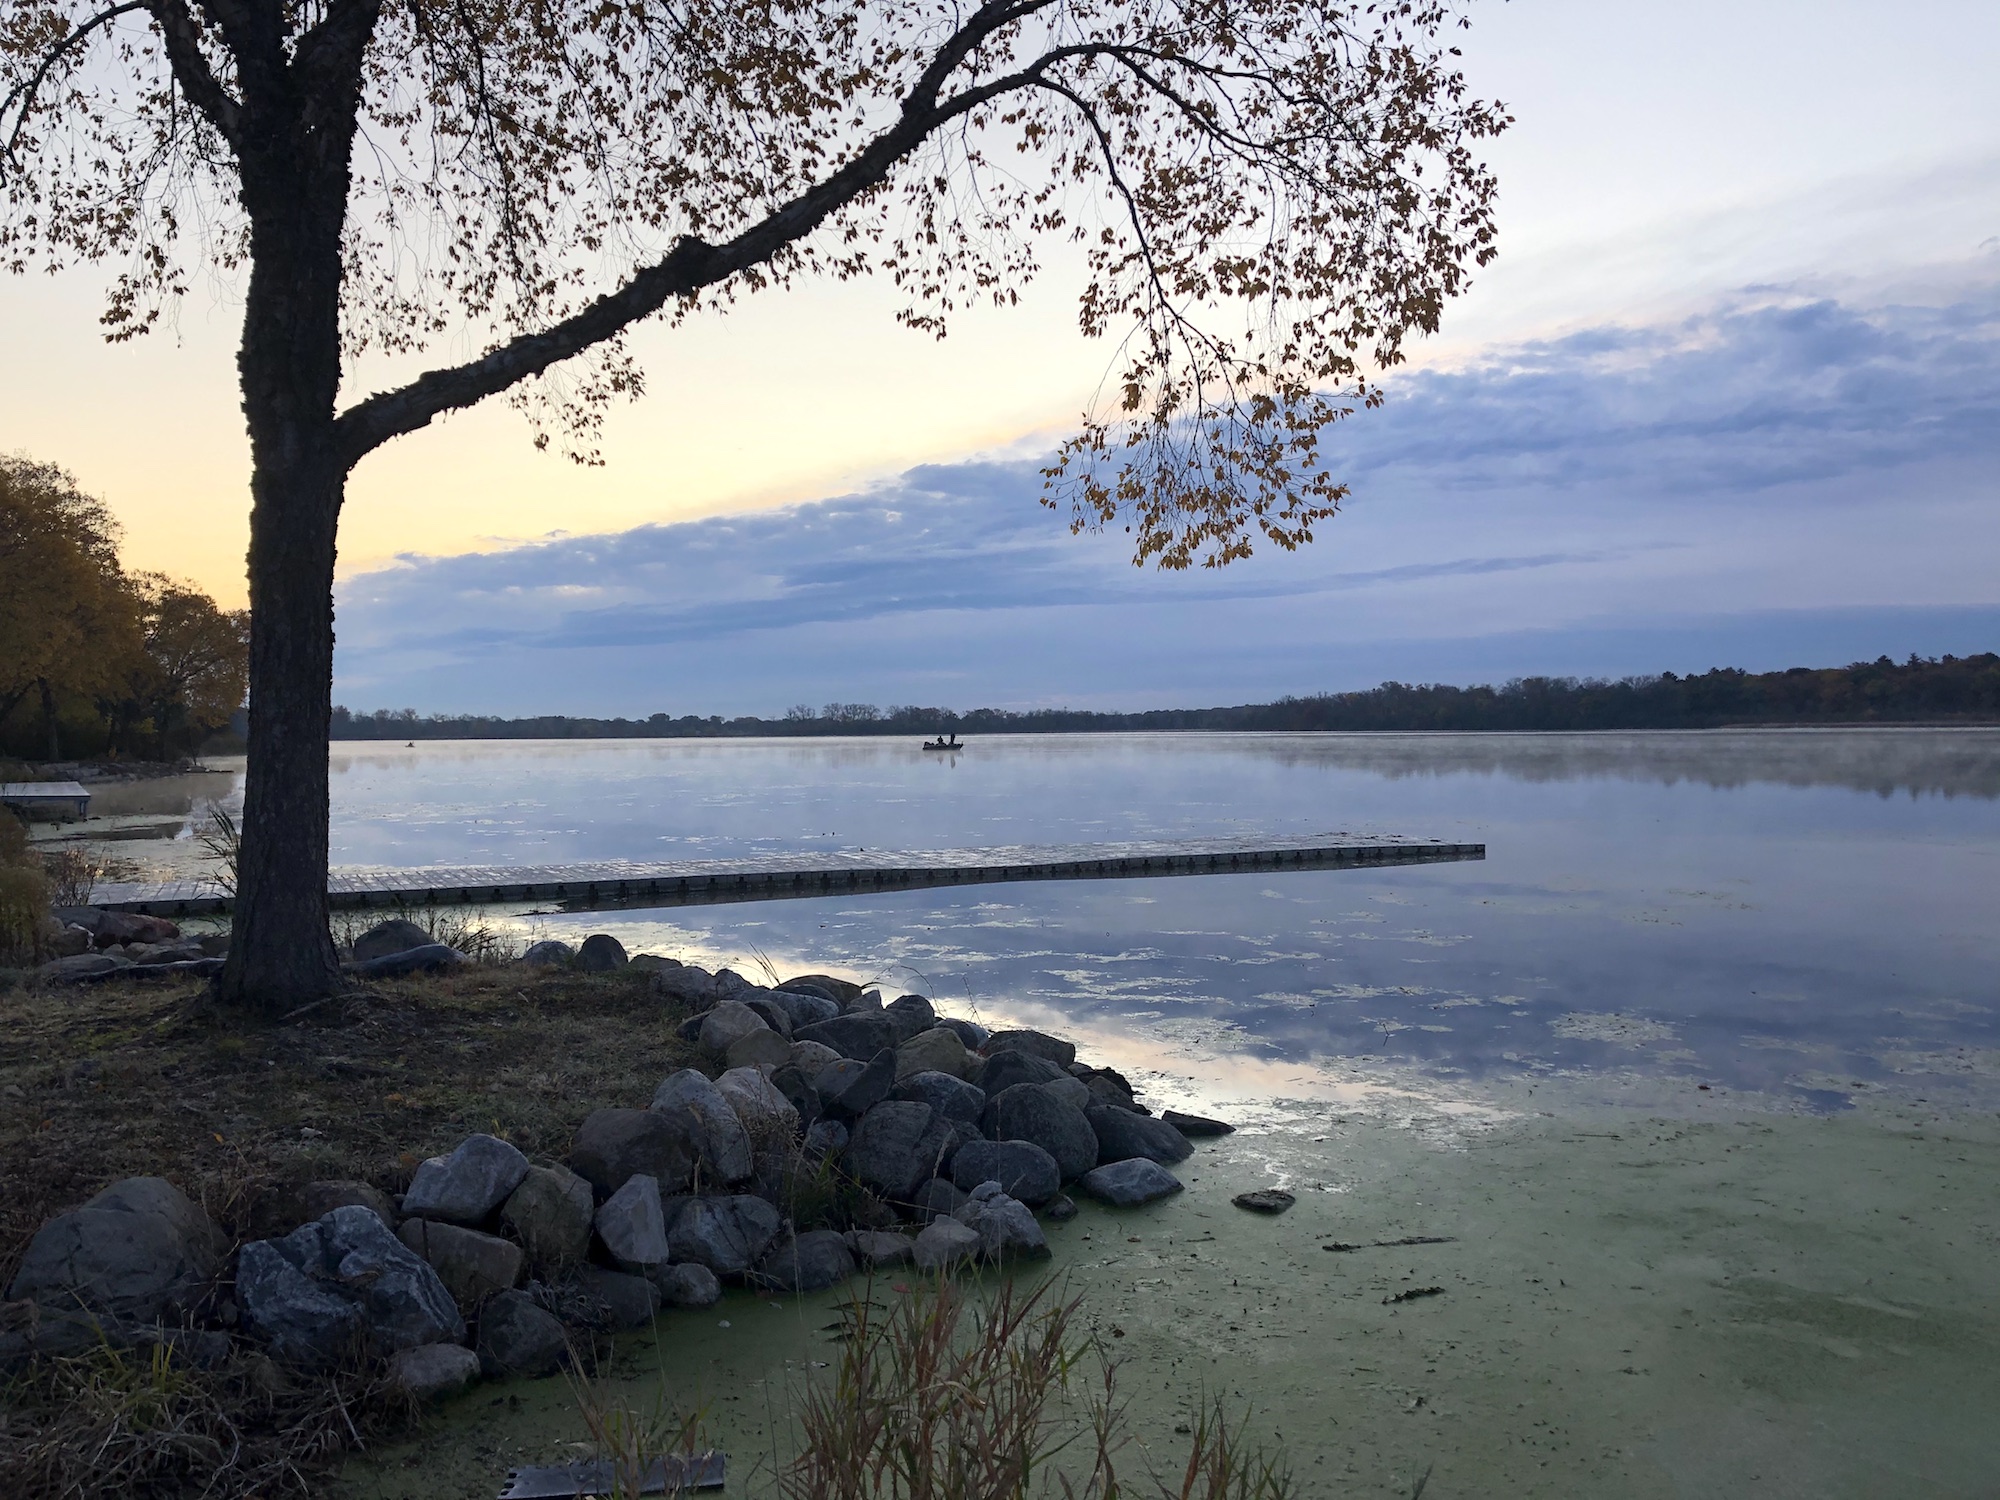 Lake Wingra on October 25, 2019.